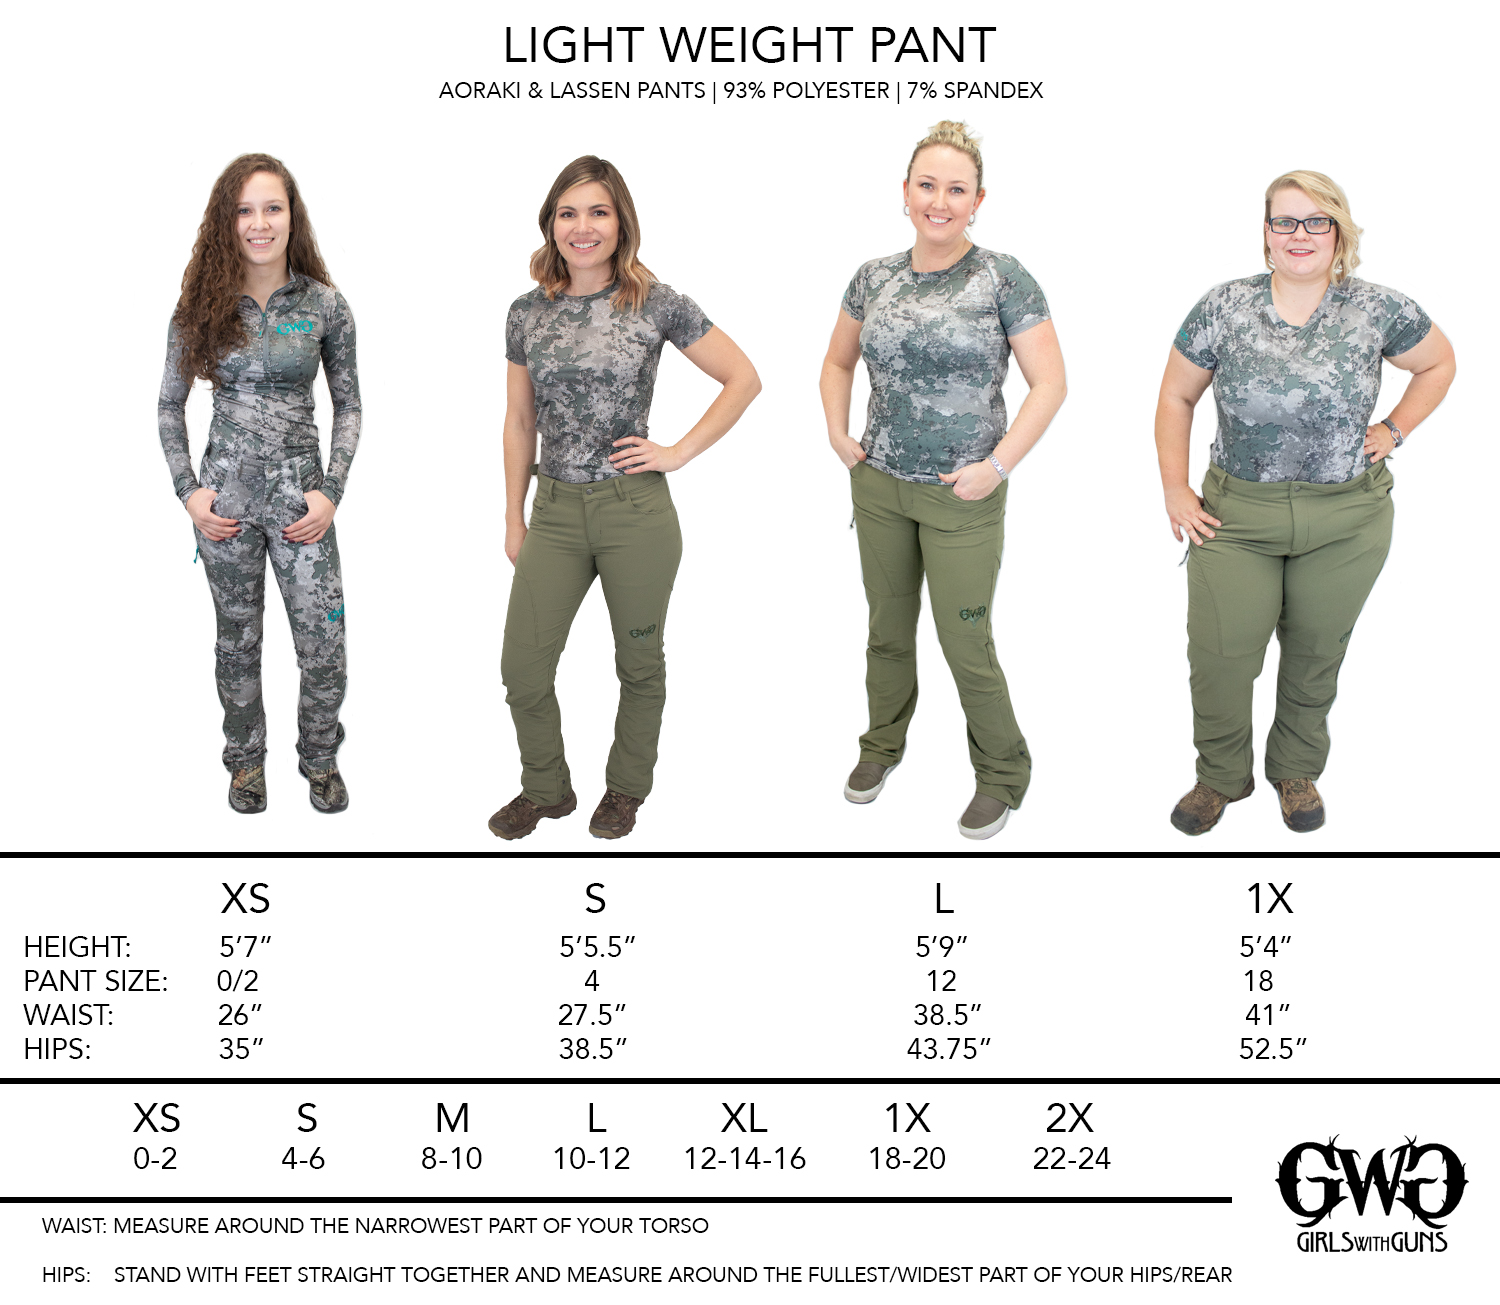 size-chart-lightweight-pants-girls-with-guns